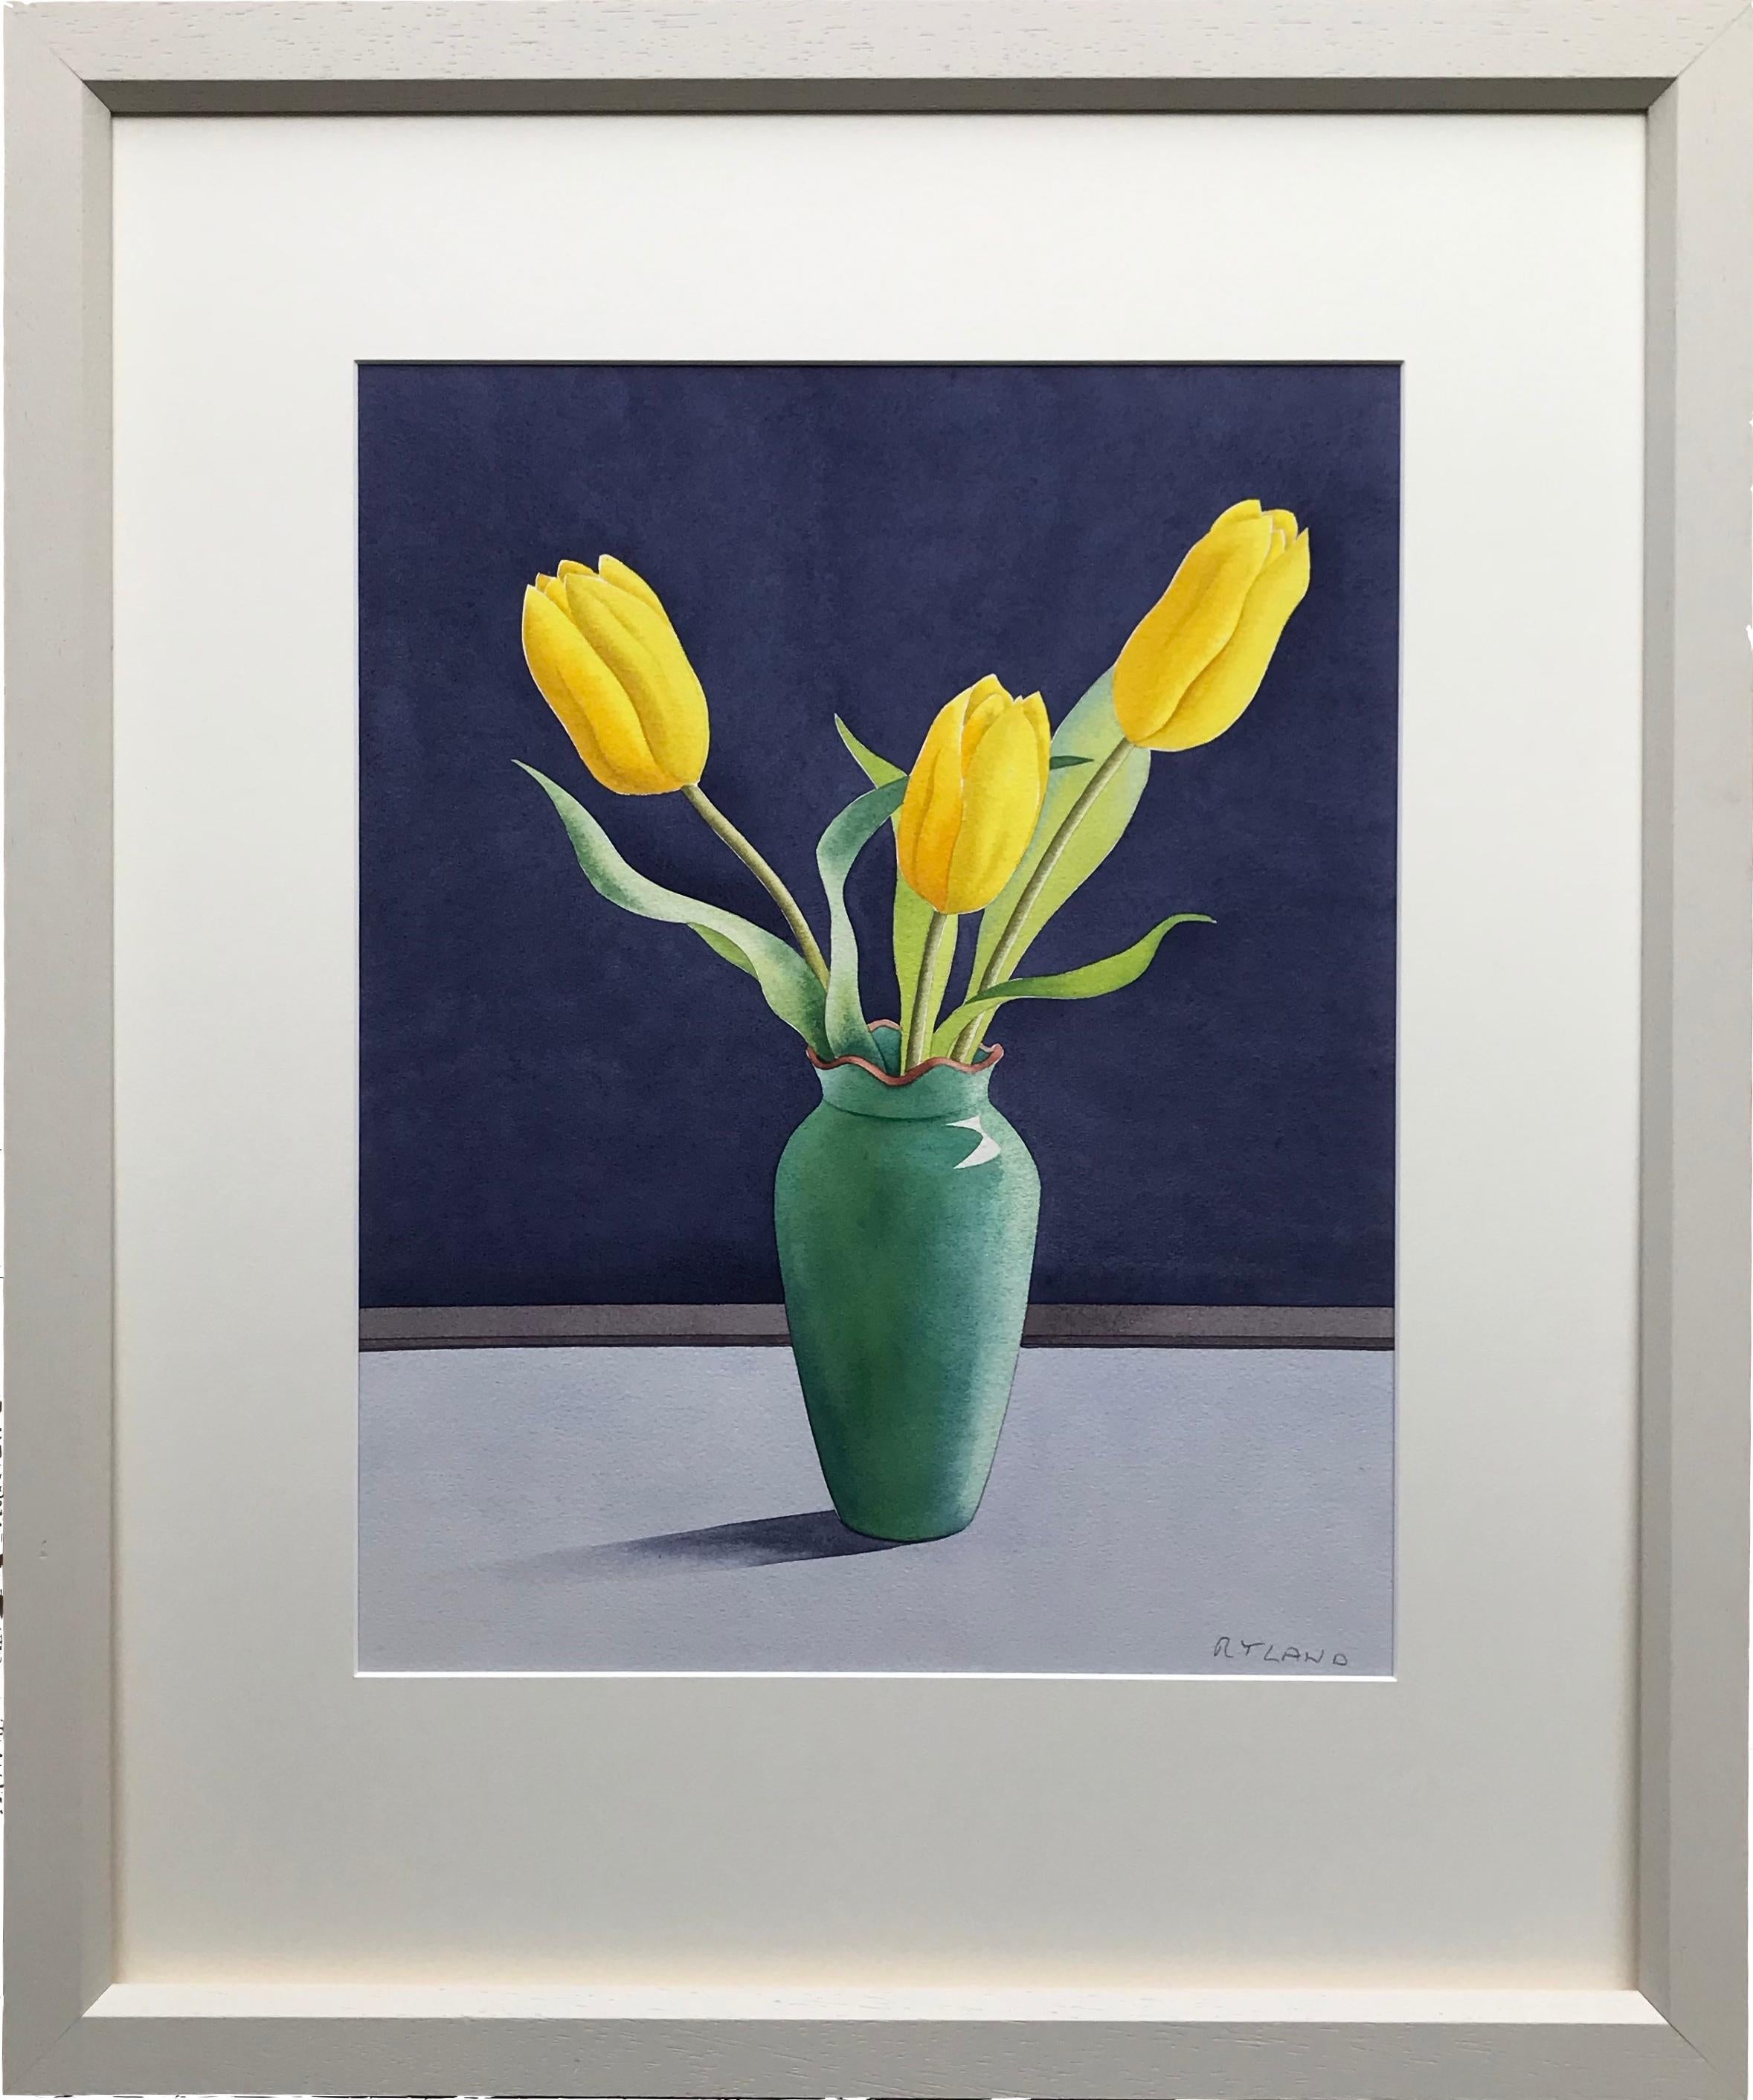 Christopher Ryland, Drei gelbe Tulpen, Stillleben, zeitgenössischer Künstler